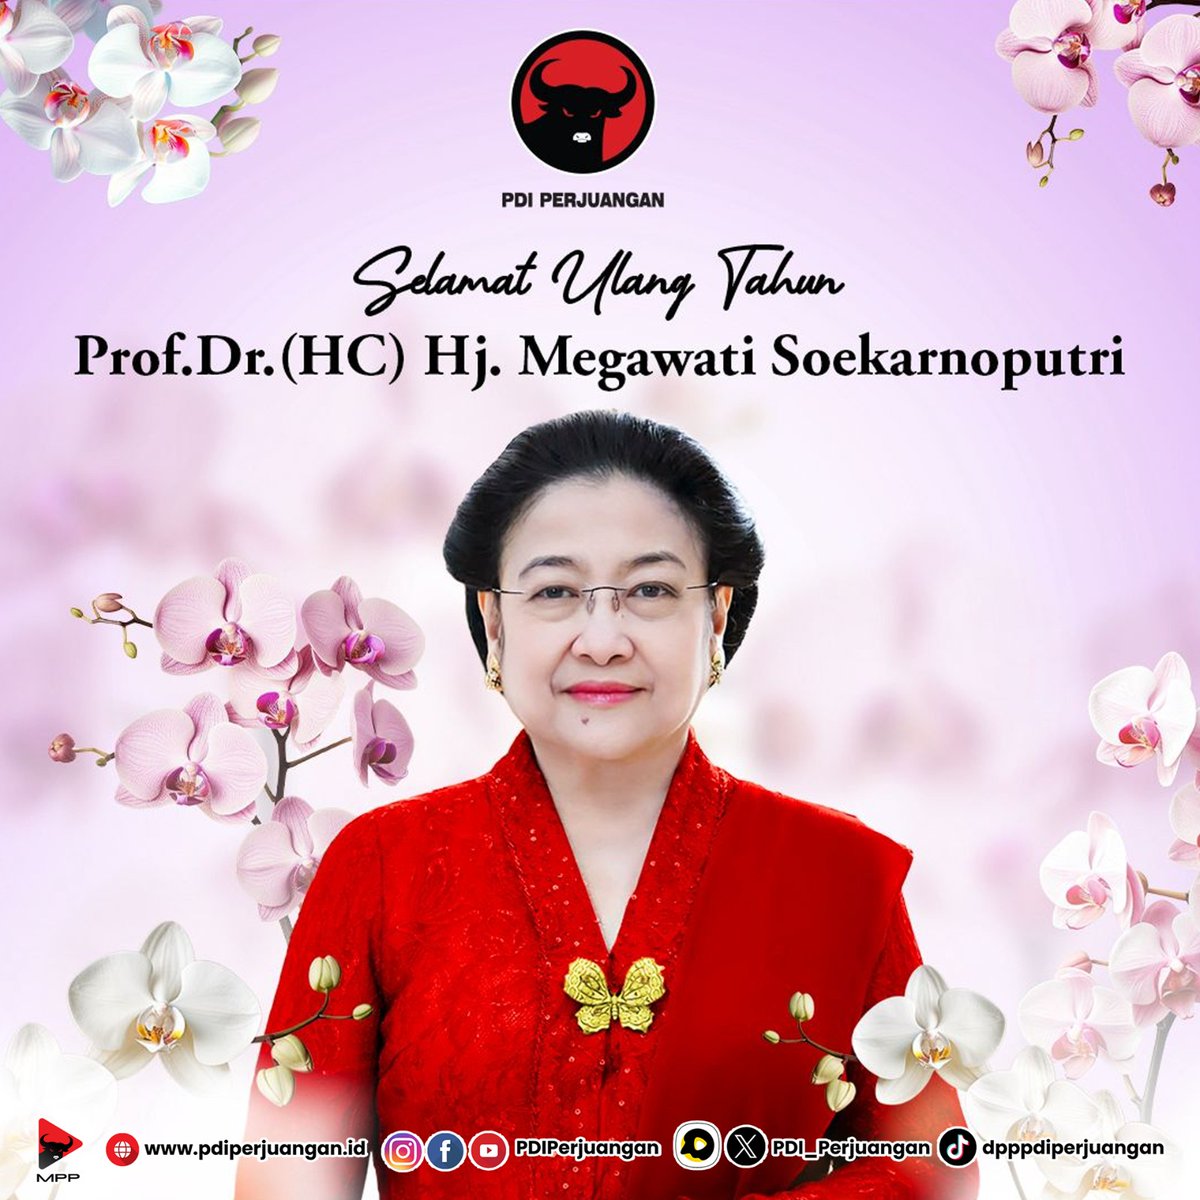 Selamat Ulang Tahun Dr. (HC) HJ. Megawati Soekarnoputri! Terus memberikan inspirasi bagi kita semua. Satyam Eva Jayate. Kebenaran Pasti Menang. #PDIPerjuangan #HUTMegawati #HUTPDIPerjuanganKe51 #KebenaranPastiMenang #SatyamEvaJayate #GanjarMahfud2024 #MEnangkanGAnjar…